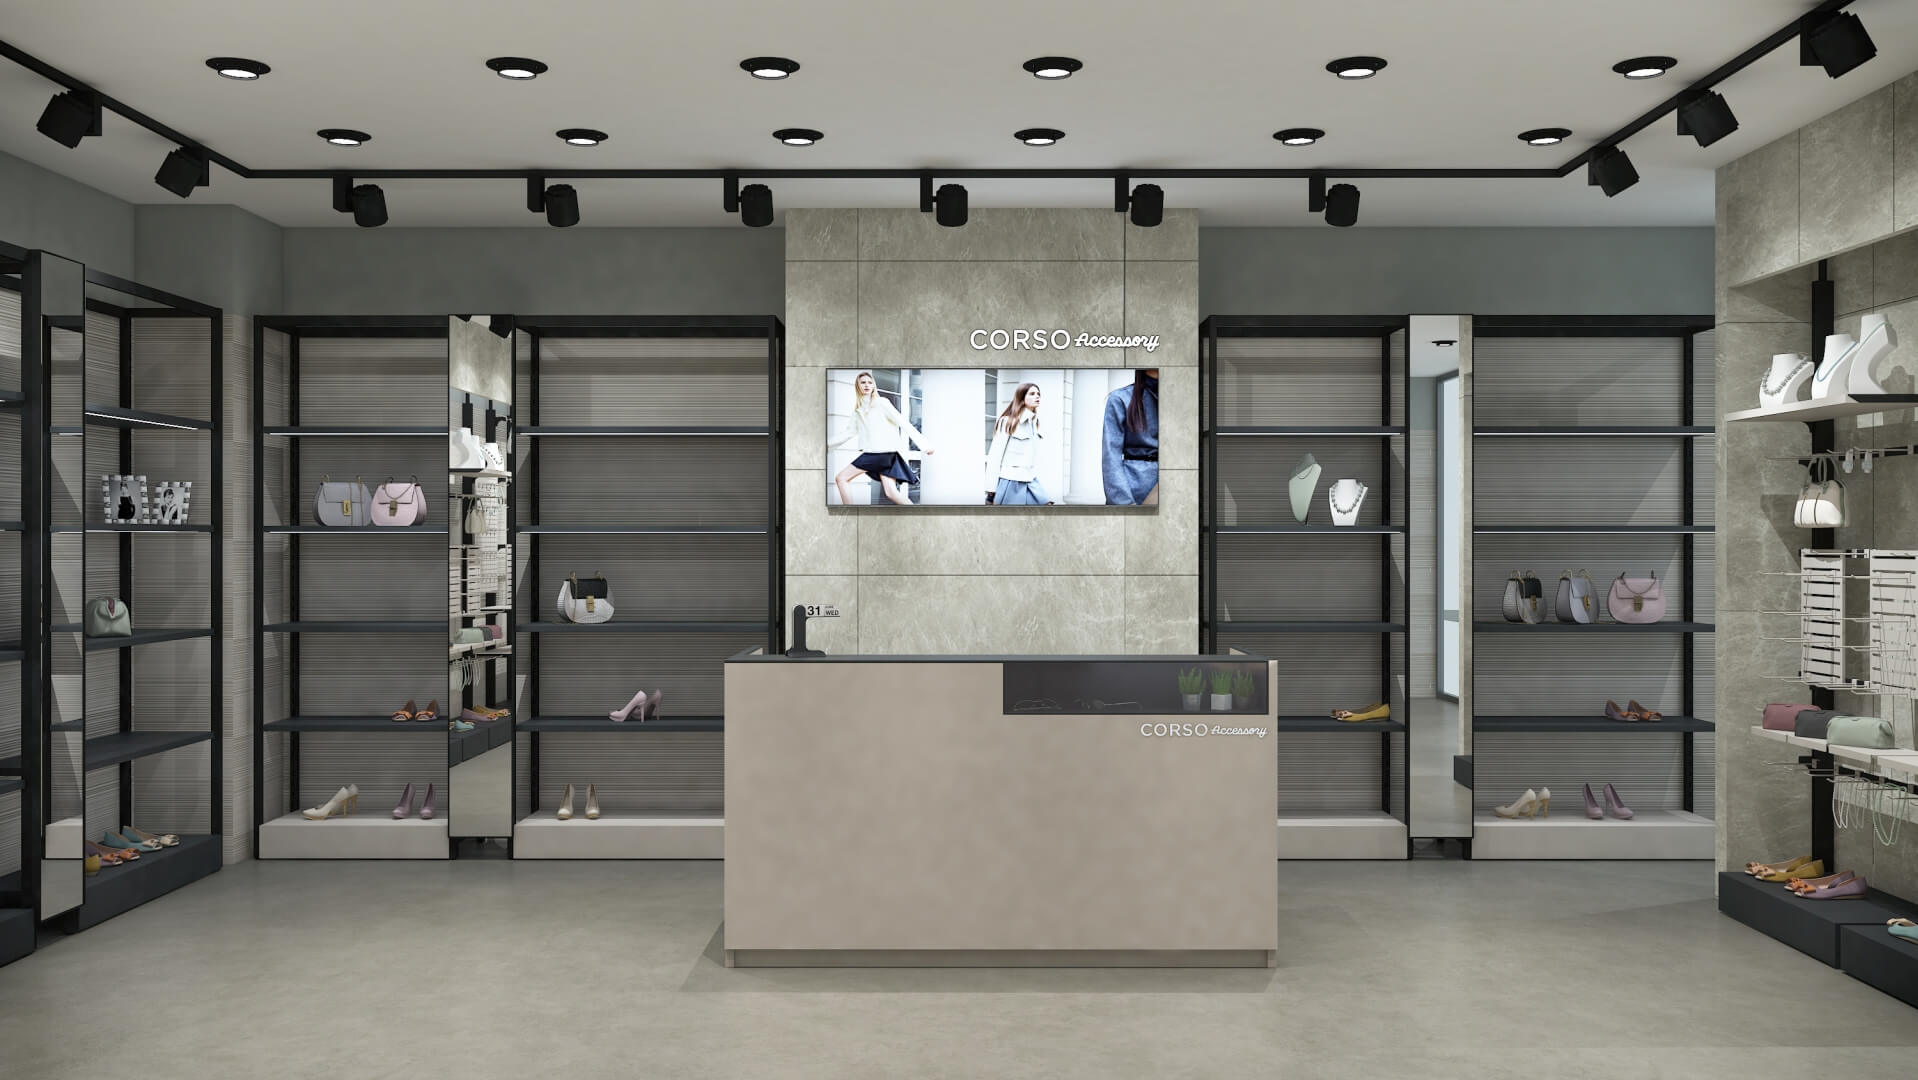 stanley namsan izmir shop on Behance  Shop interior design, Store design  interior, Automotive shops